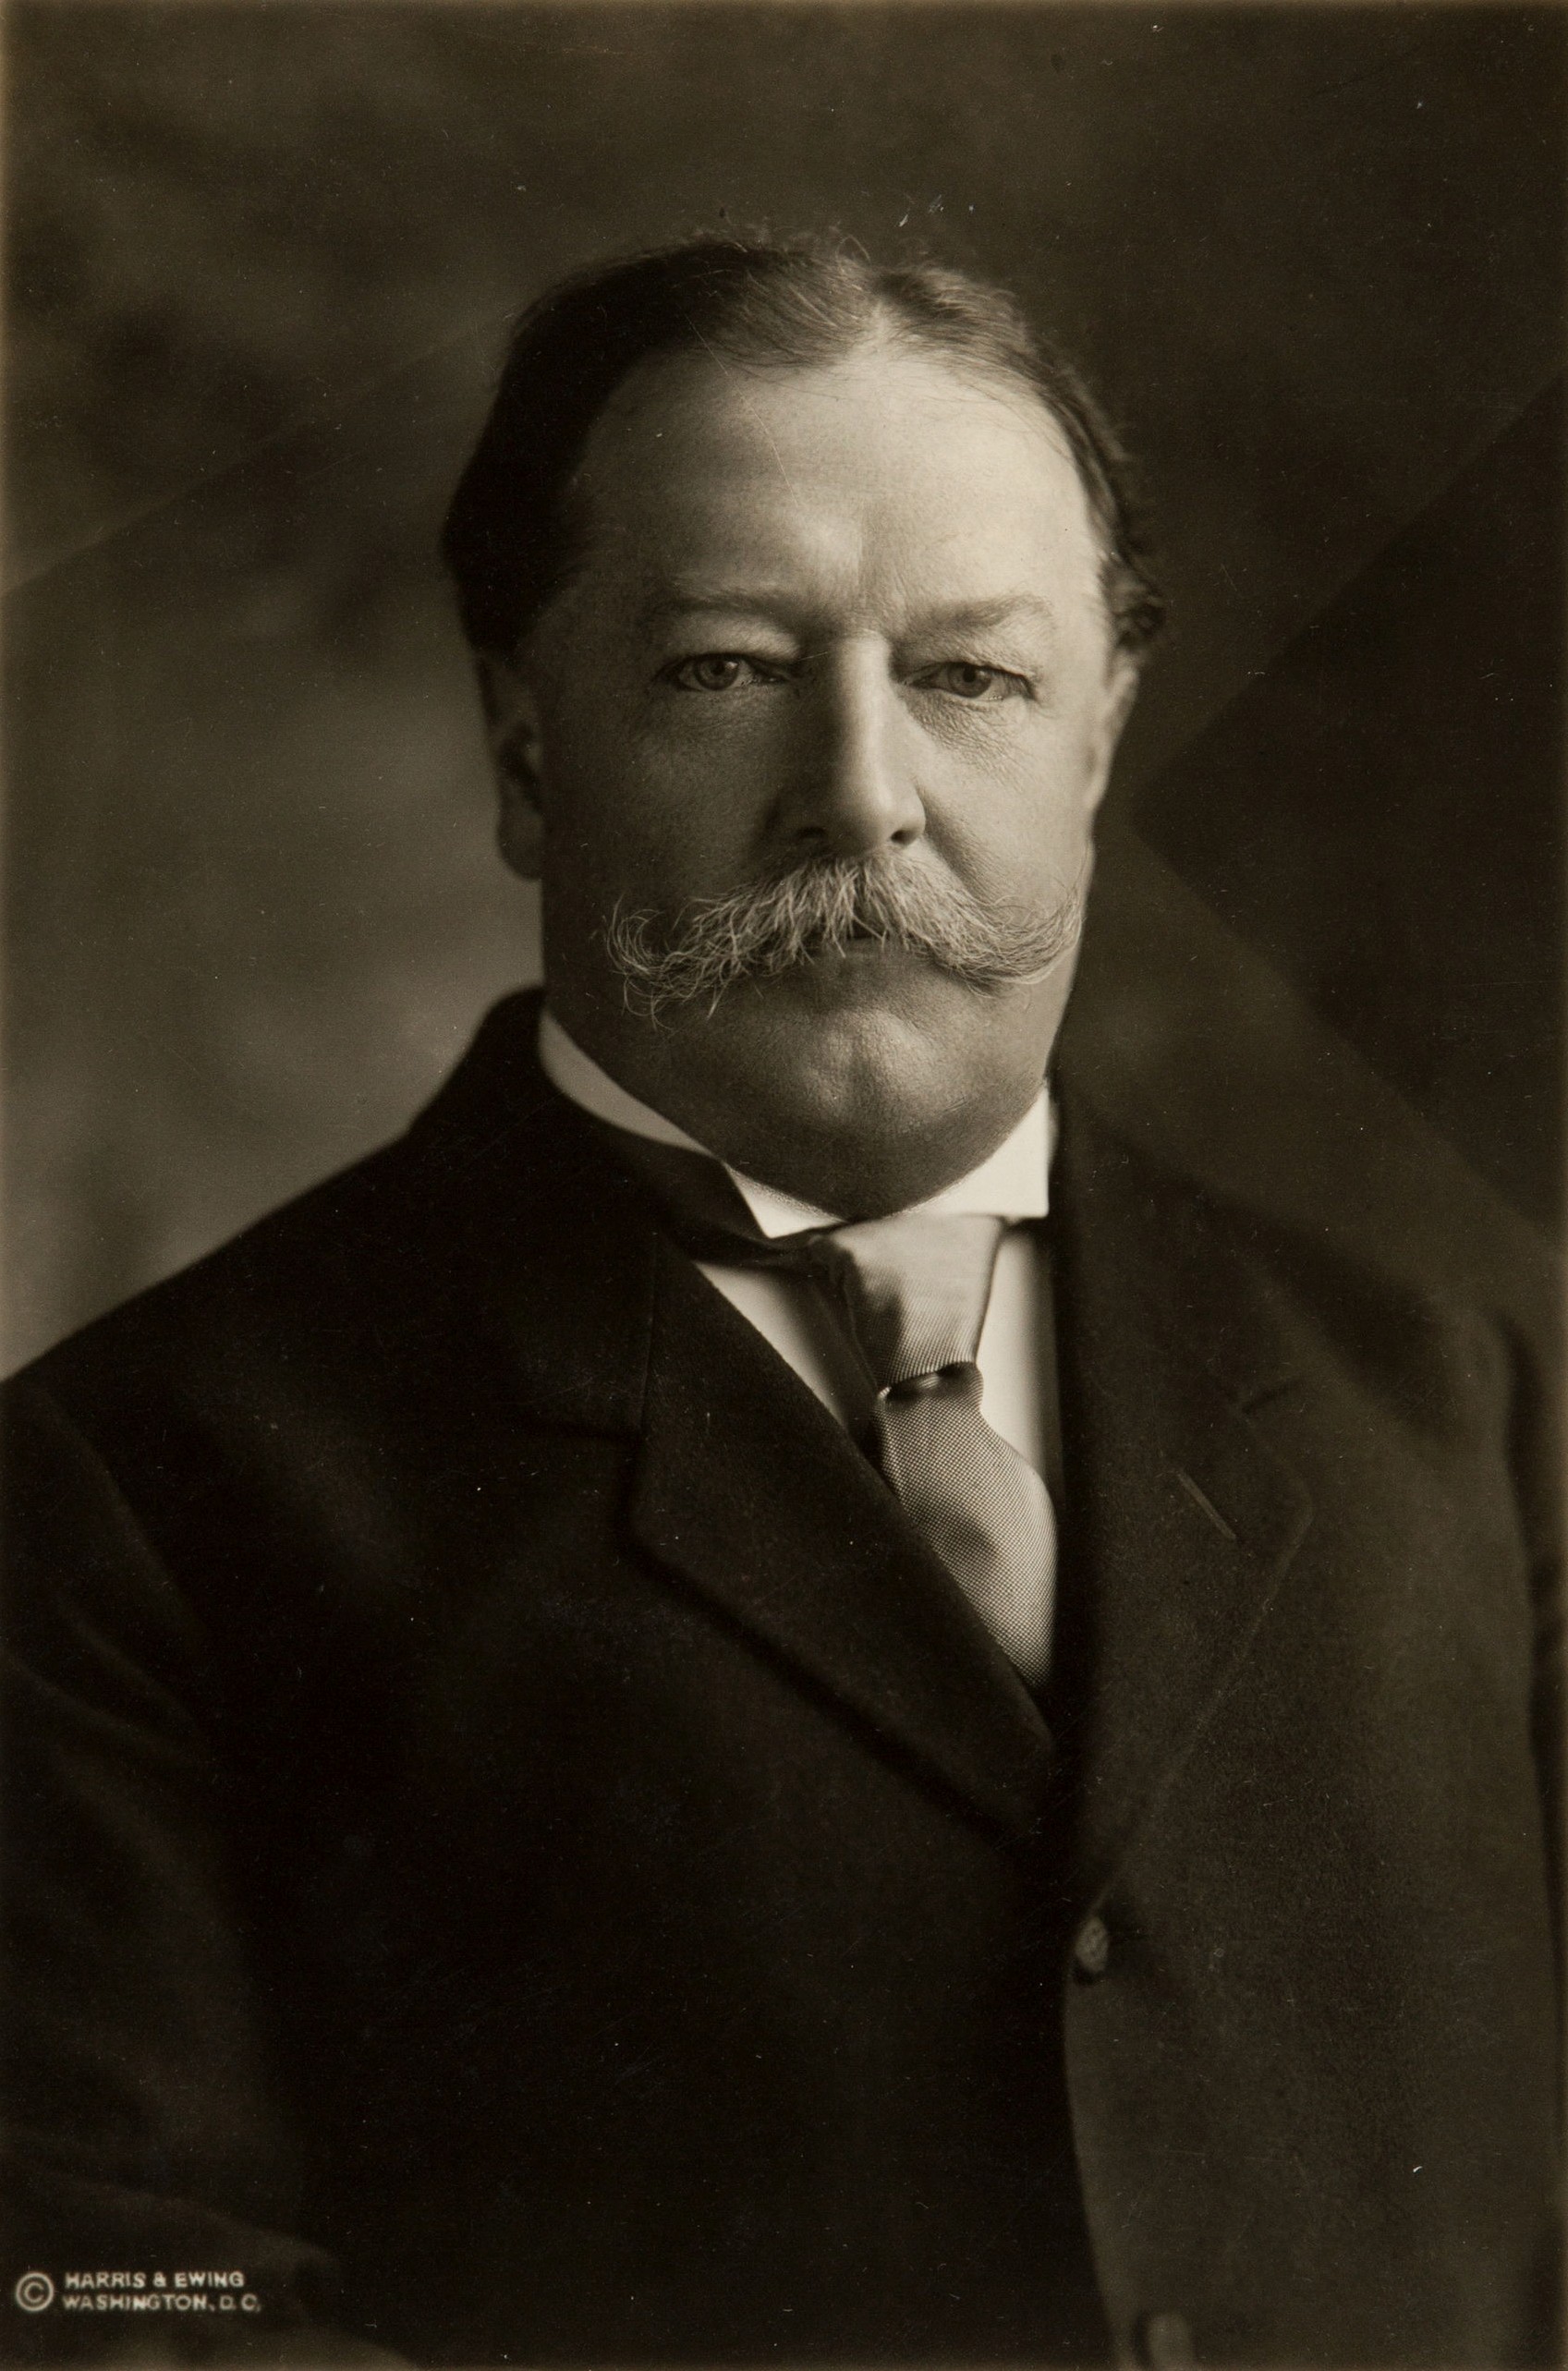 William h. Taft